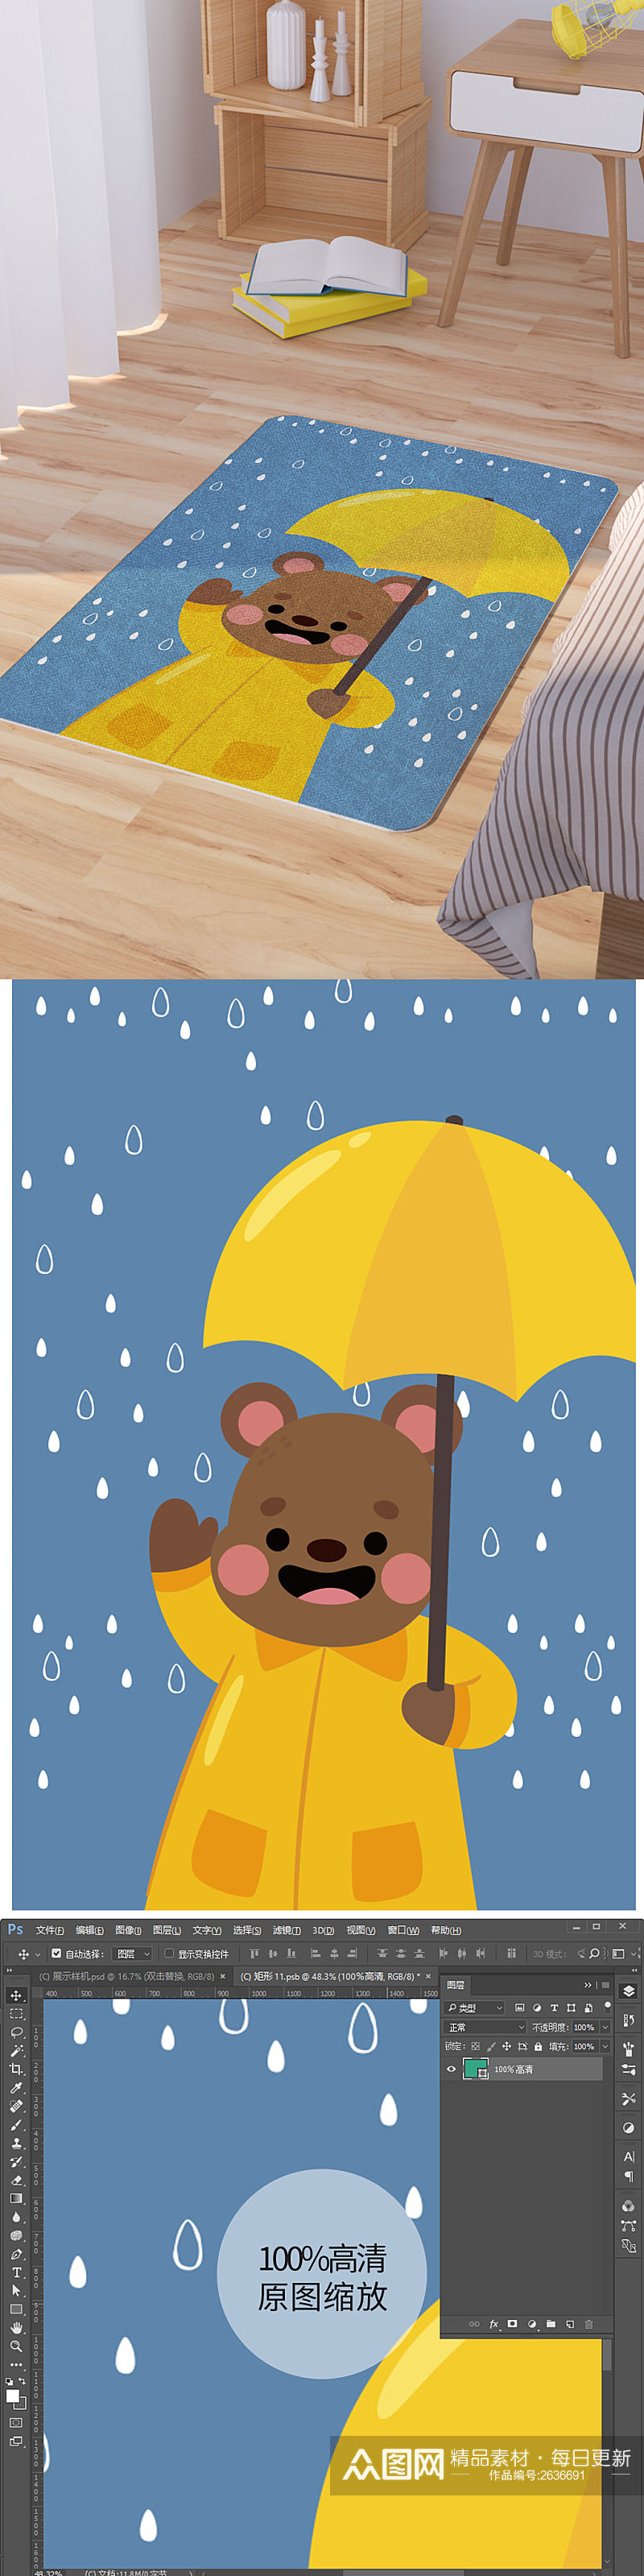 矢量手绘卡通可爱打伞的小熊脚垫地毯图案素材